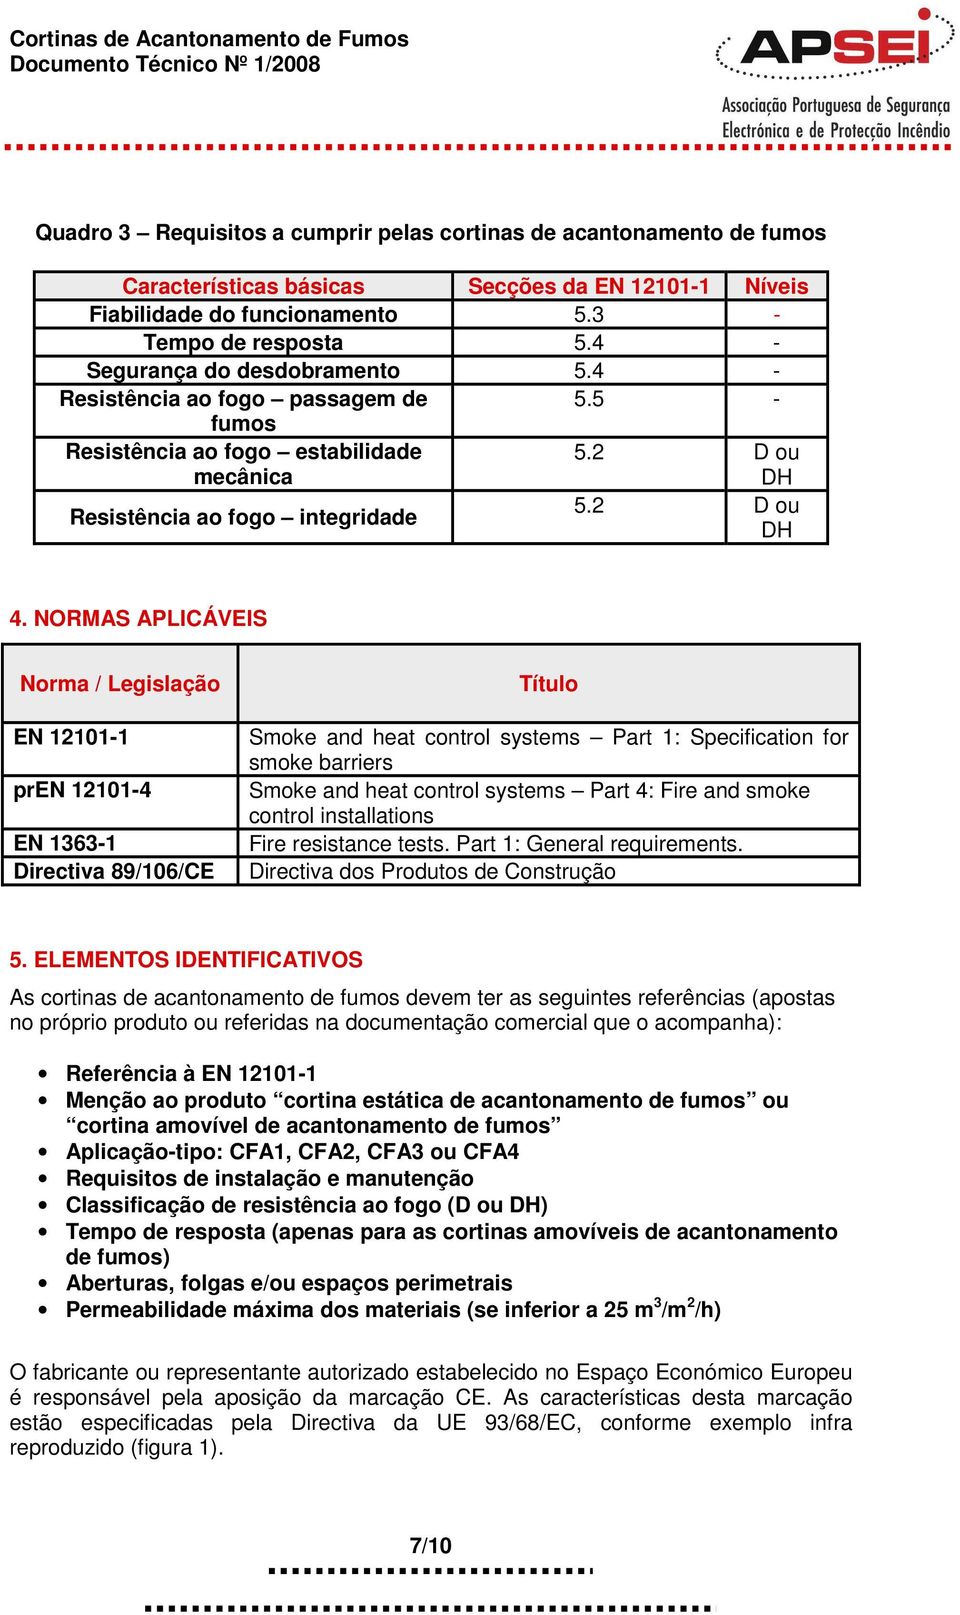 Documento Técnico Nº 1/2008 Edição 01/2008 CORTINAS DE ACANTONAMENTO DE  FUMOS - PDF Download grátis